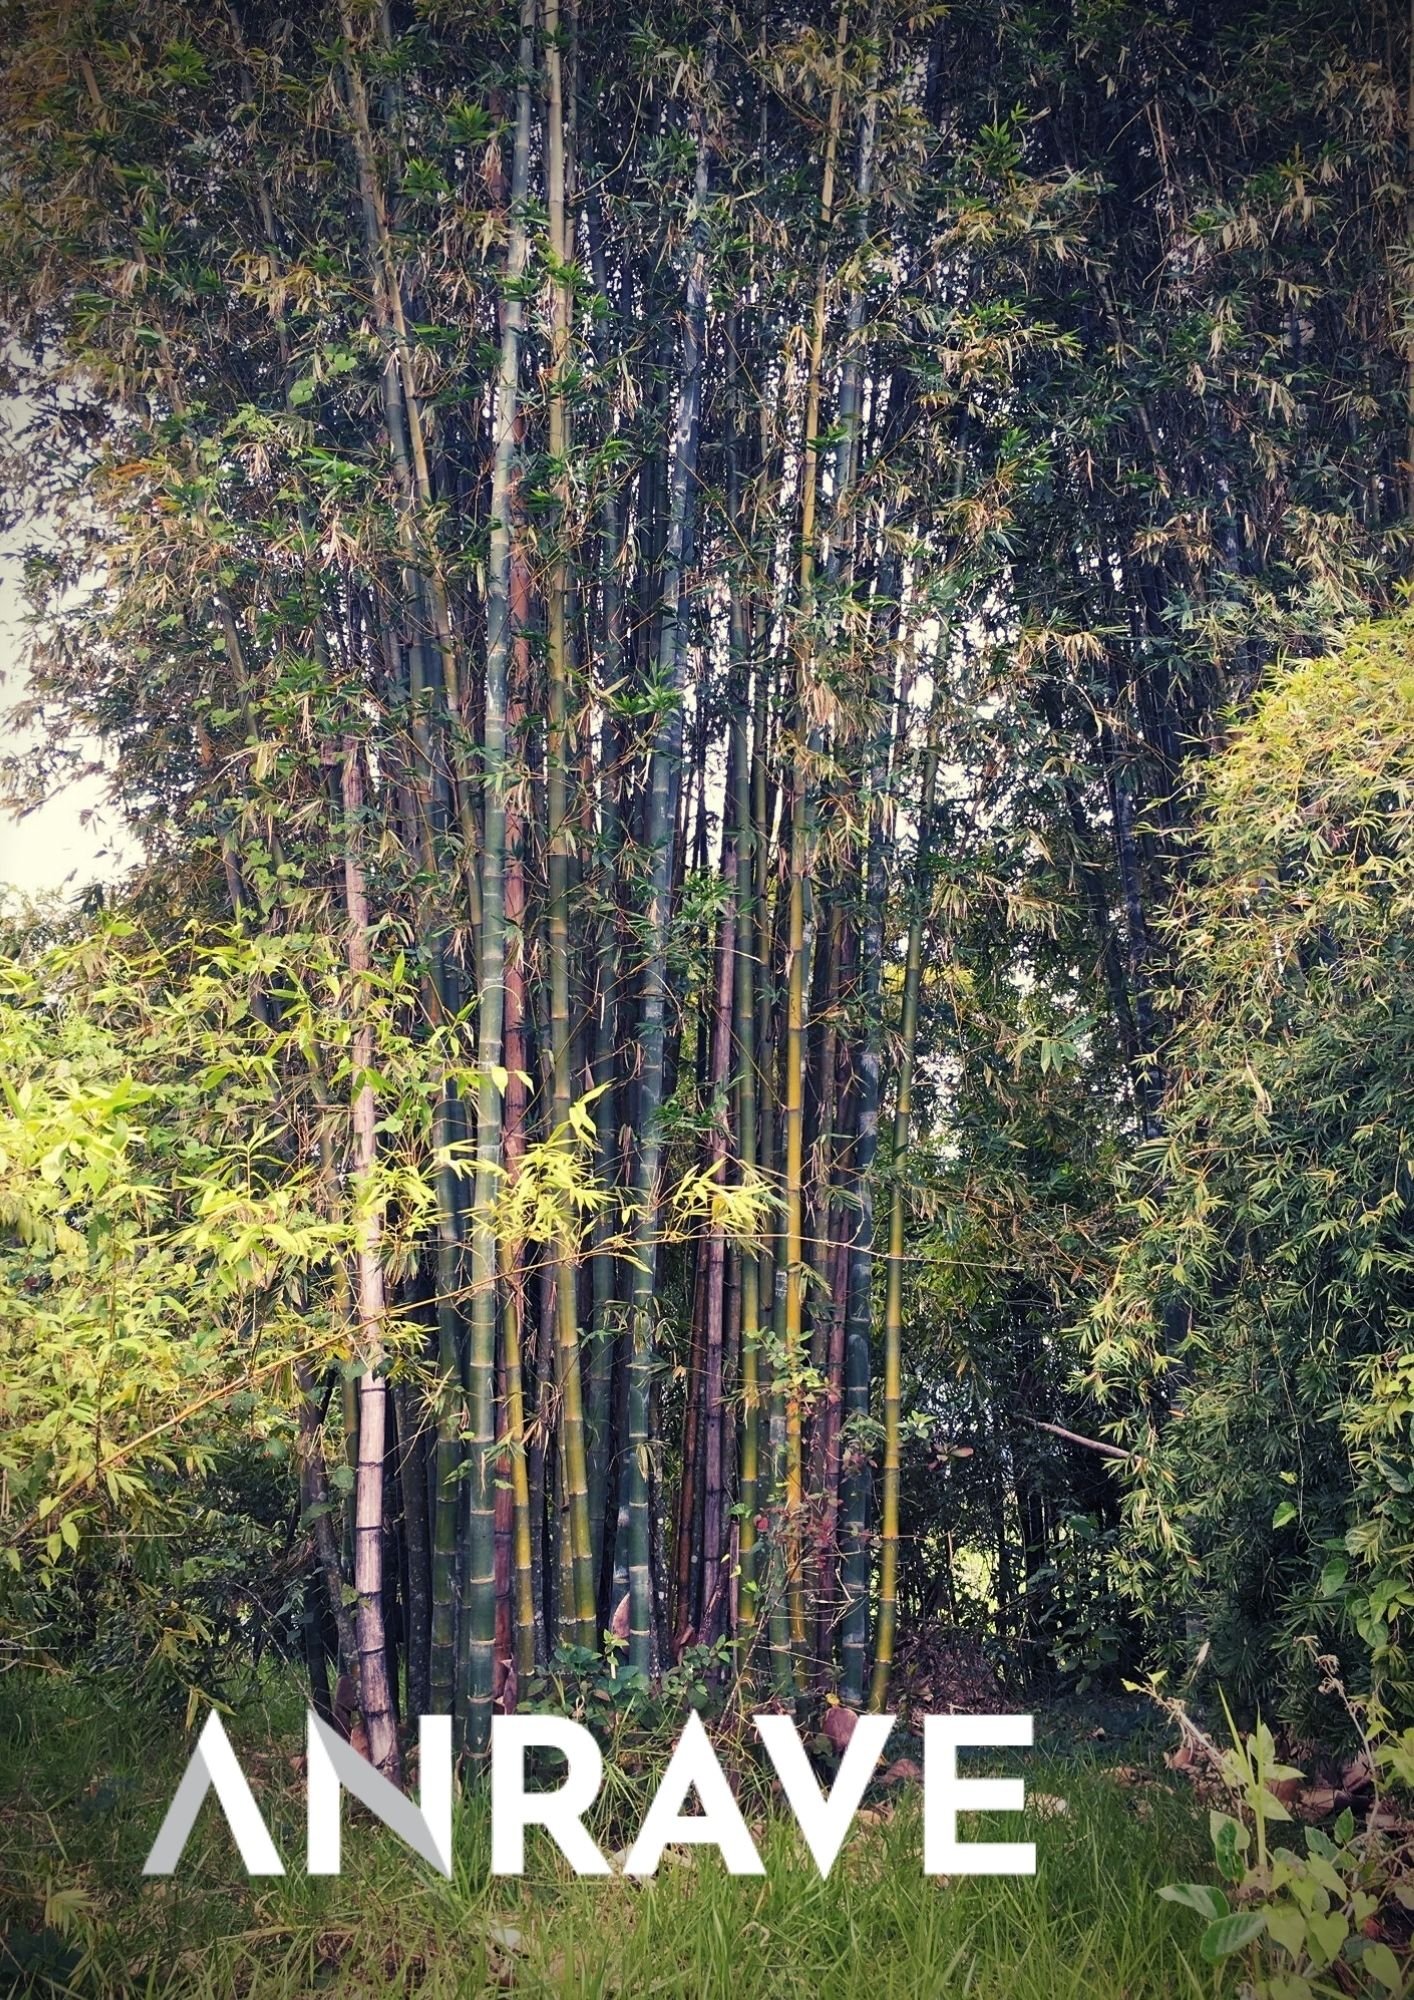 bosque bambu